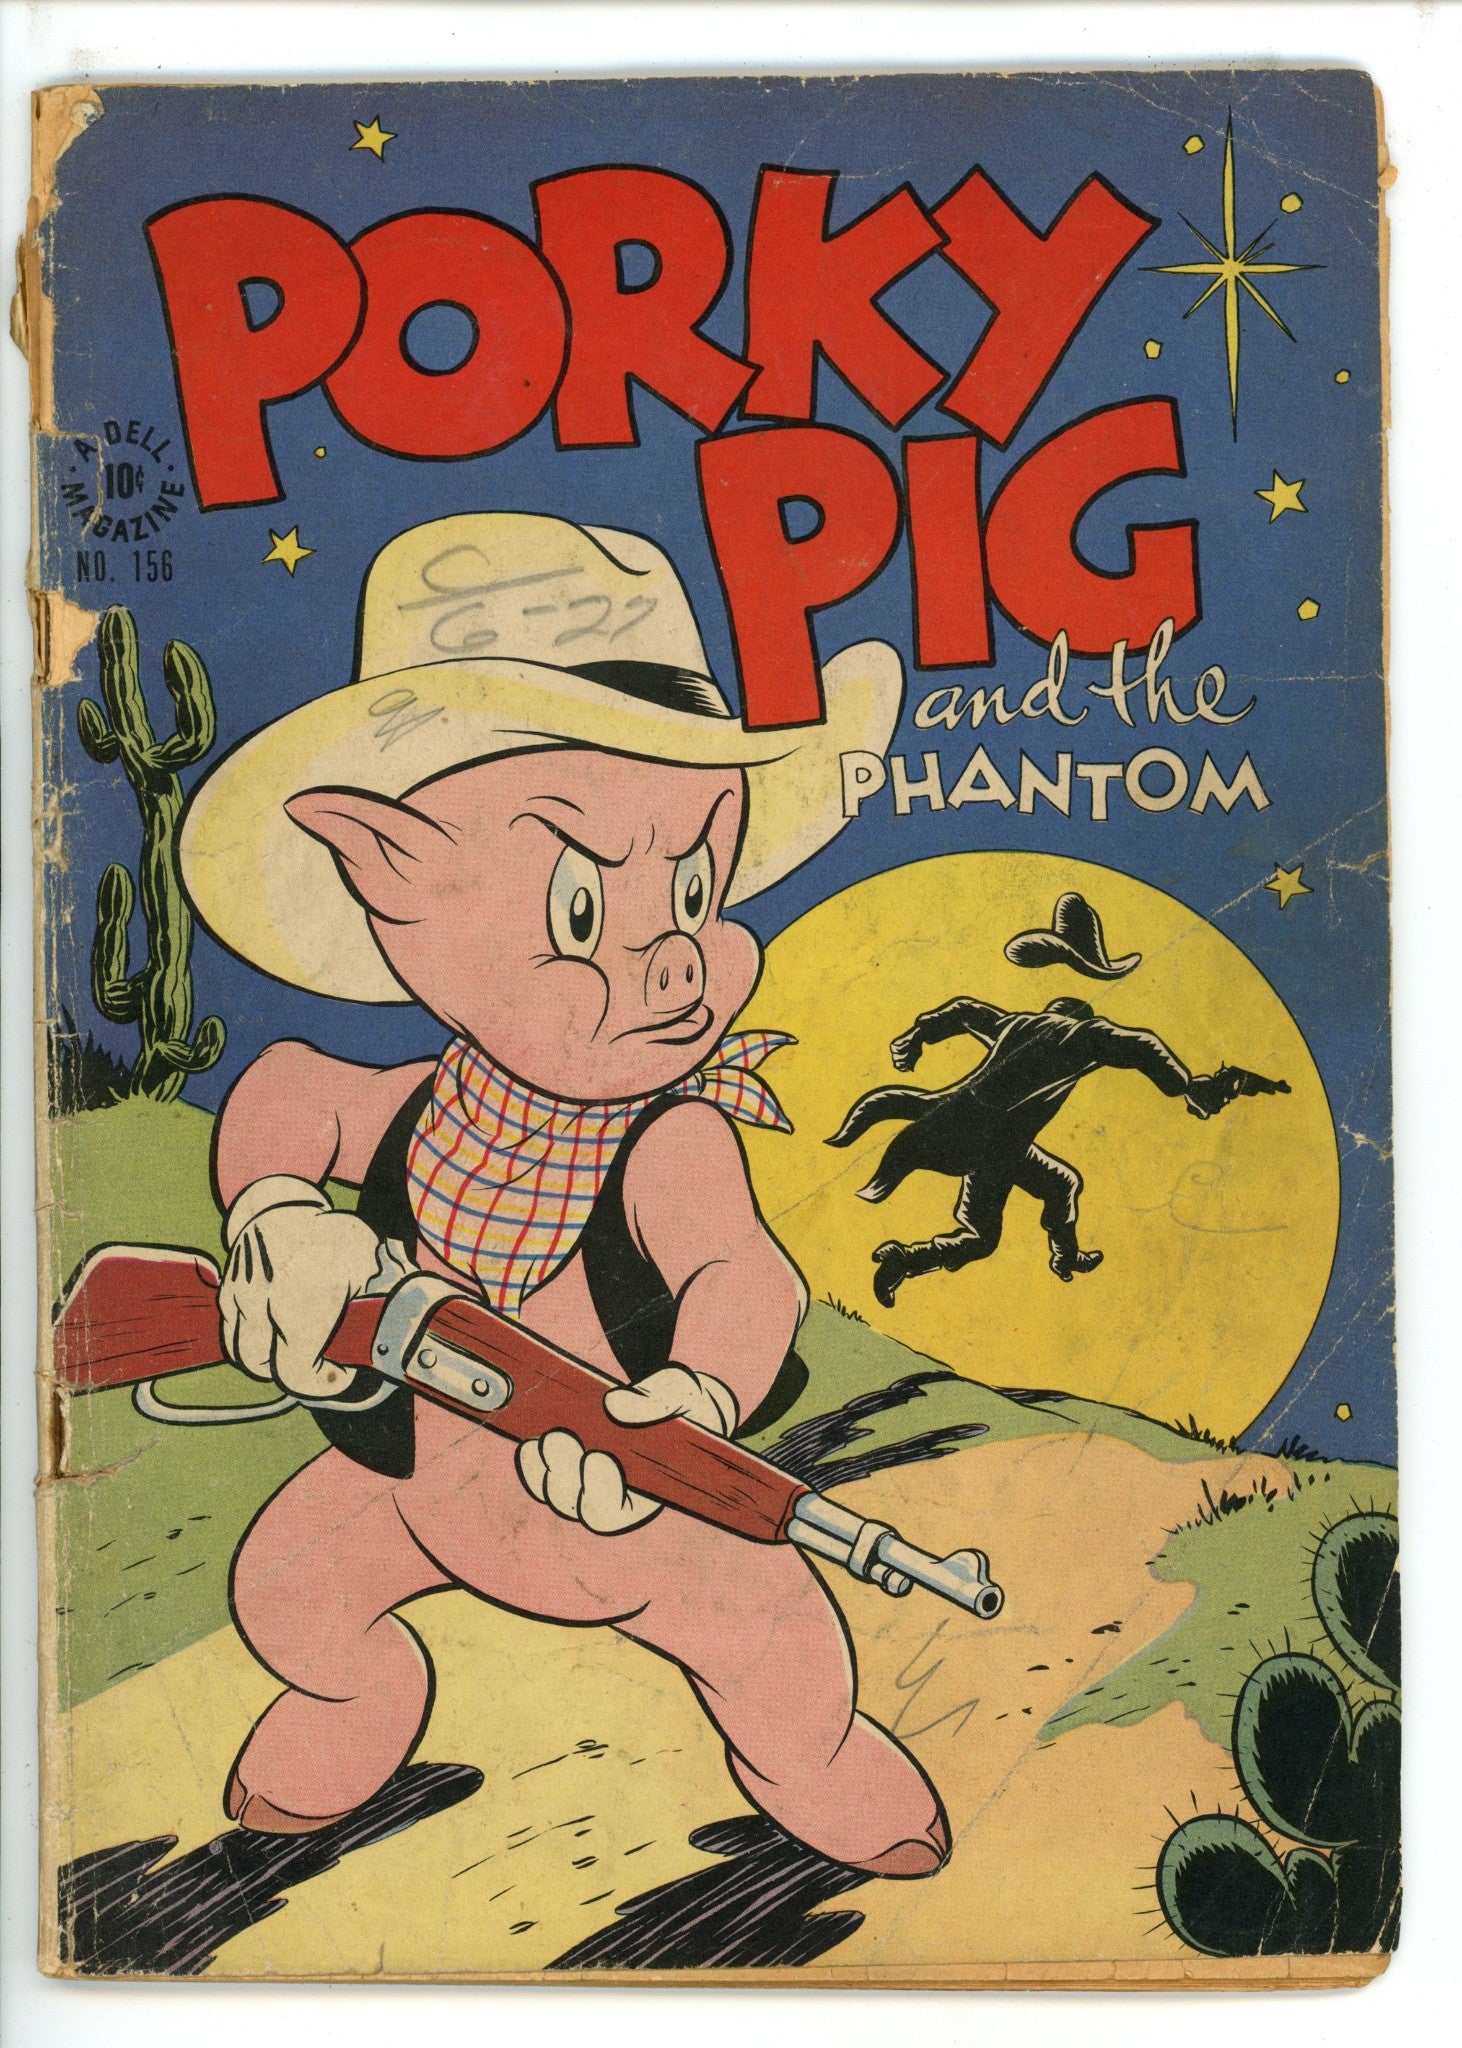 Four Color Vol 2 156 Porky Pig FR